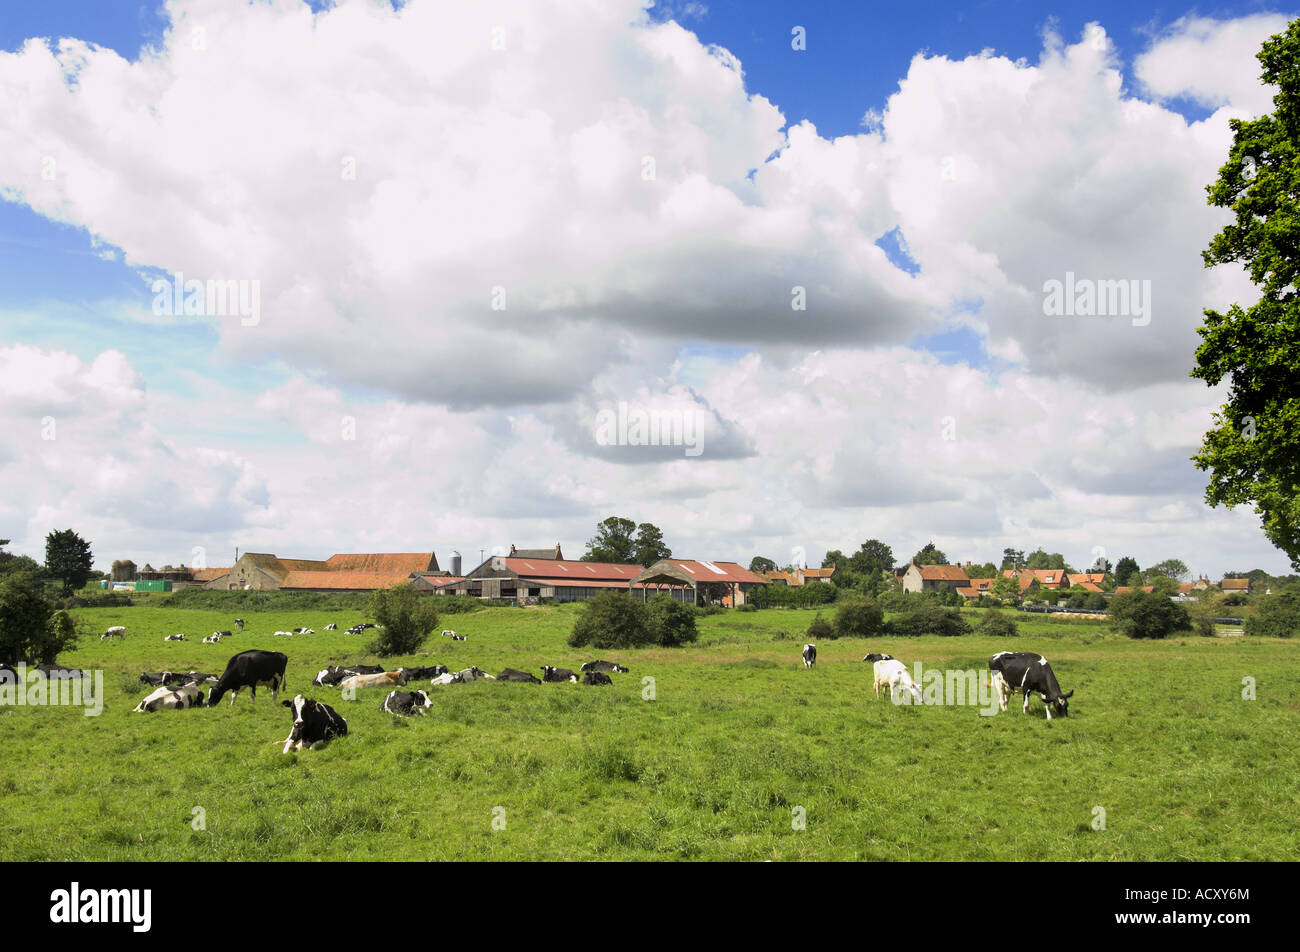 View of traditional farm Norfolk avec troupeau laitier sur les pâturages prairie avec des bâtiments de ferme en arrière-plan Binham Angleterre Août Banque D'Images